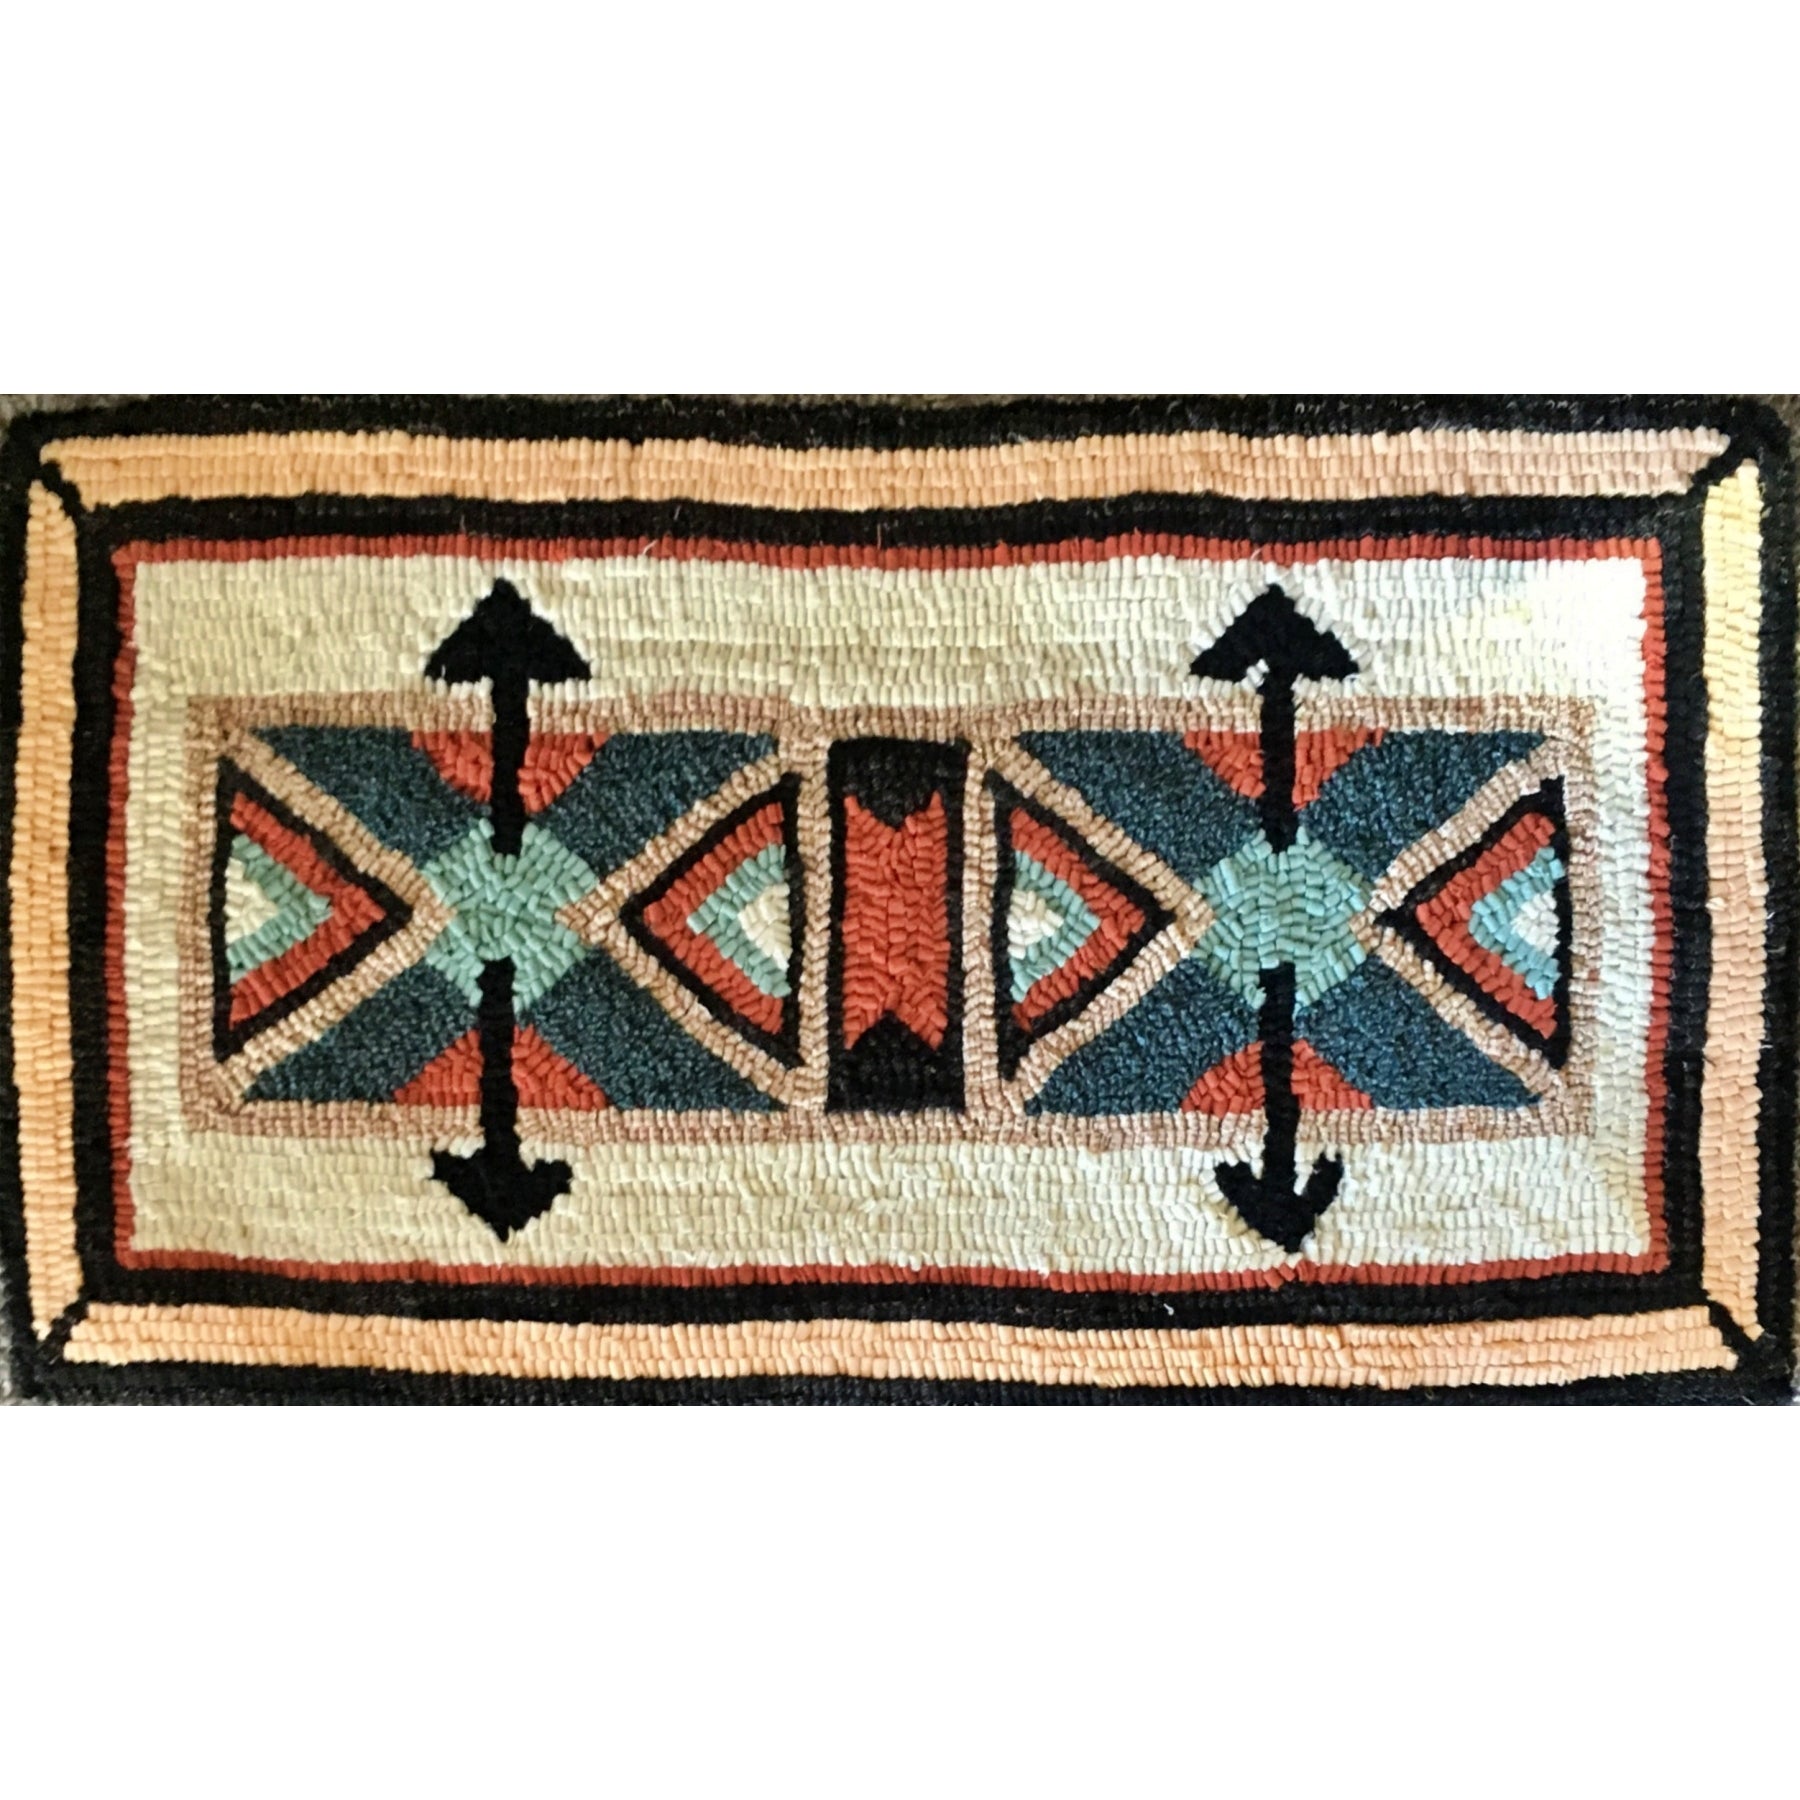 Teton, rug hooked by Kathie Paulk